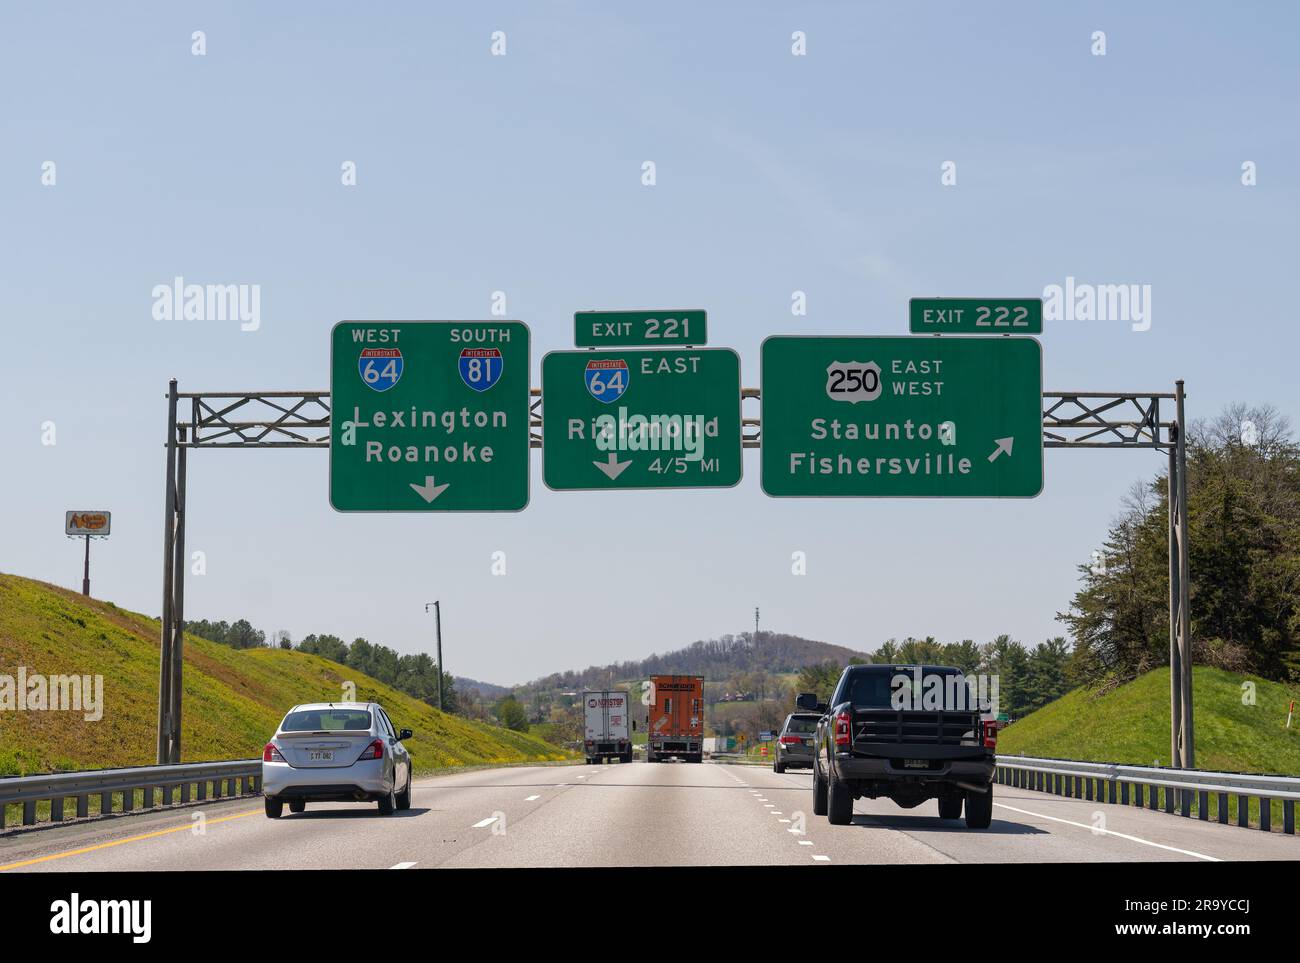 Staunton, va - 20 avril 2022 : Interstate 81 vers Lexington et Roanoke et panneaux pour la sortie 221 est Interstate 64 est vers Richmond, sortie 222 pour US Banque D'Images